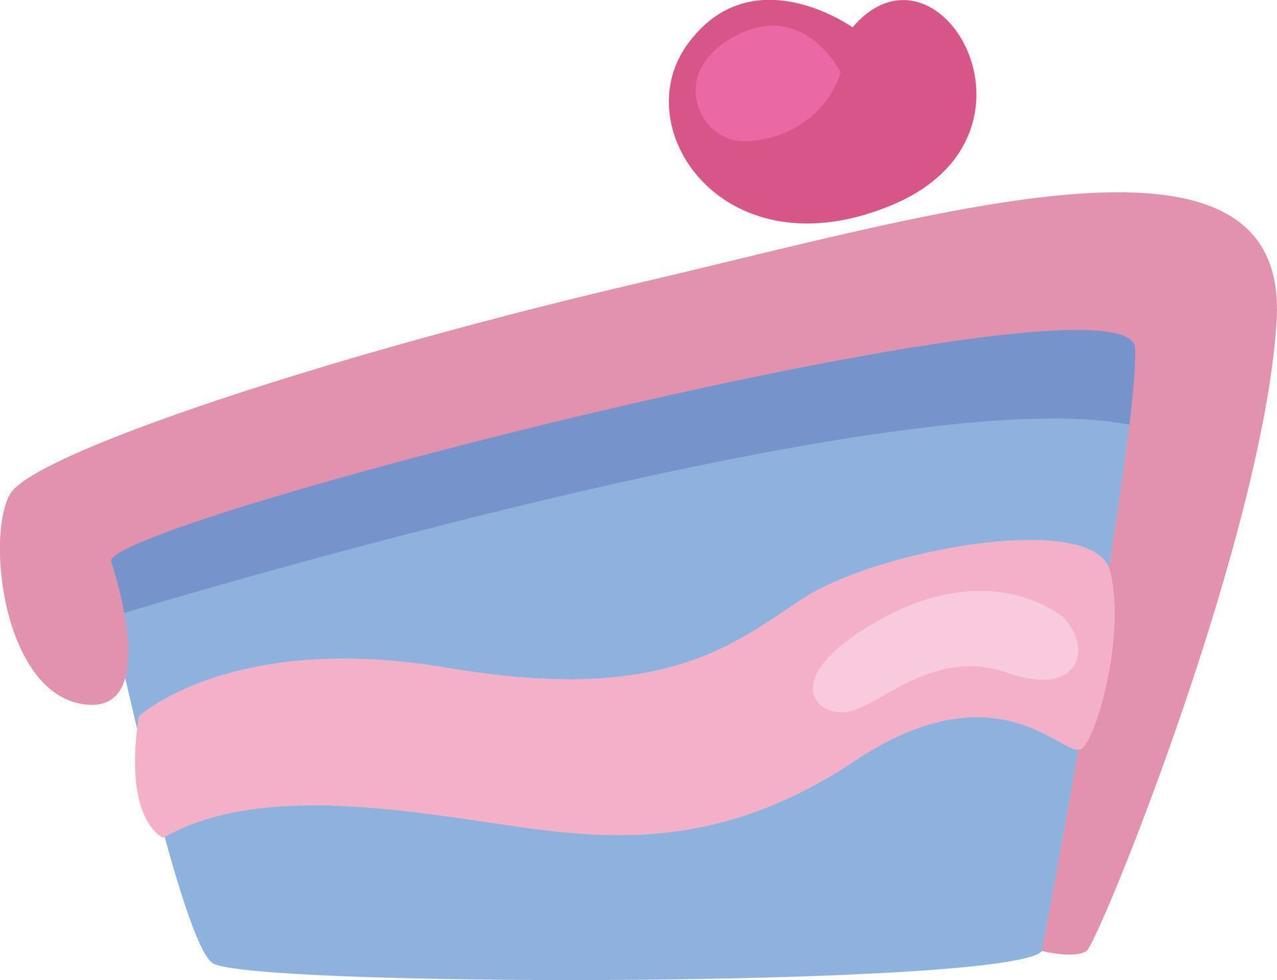 rebanada de pastel rosa, ilustración, vector sobre fondo blanco.